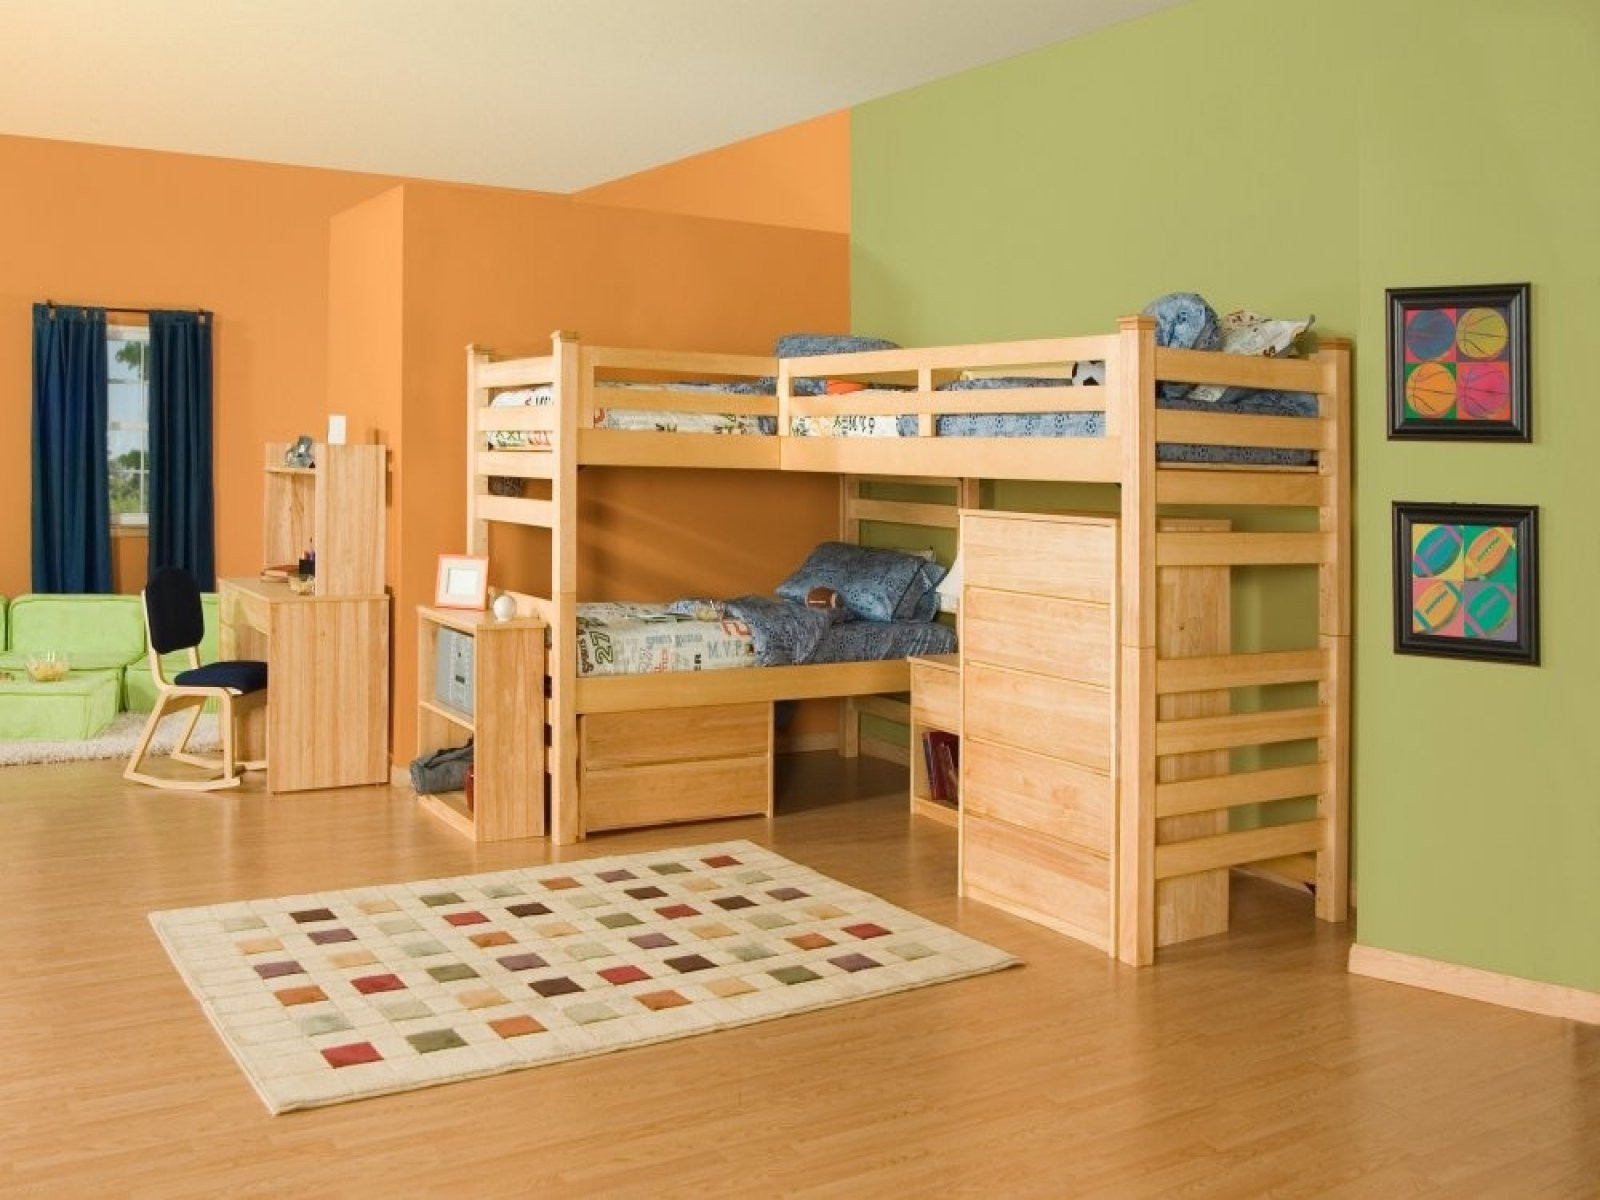 Bedroom Set For Boys
 Boys Bedroom Sets Best Tips to Know Home Furniture Design